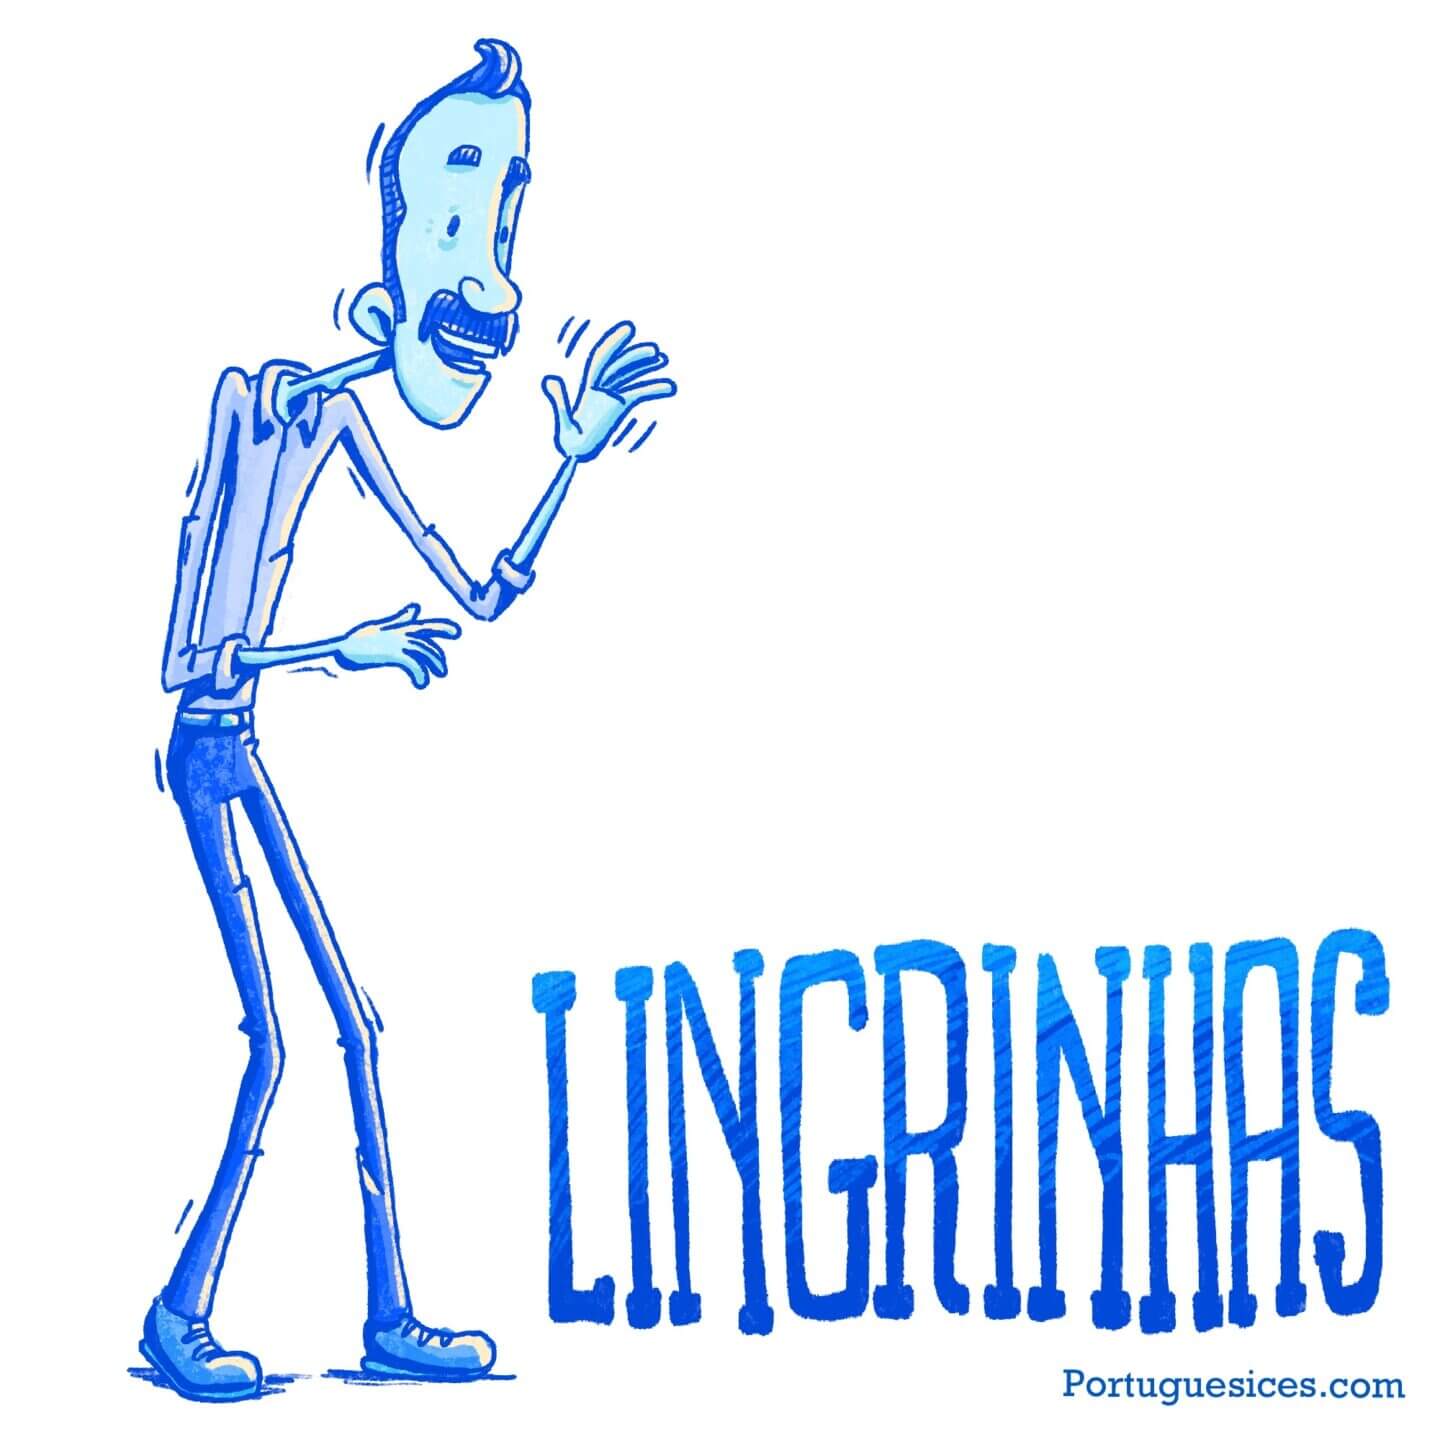 Lingrinhas